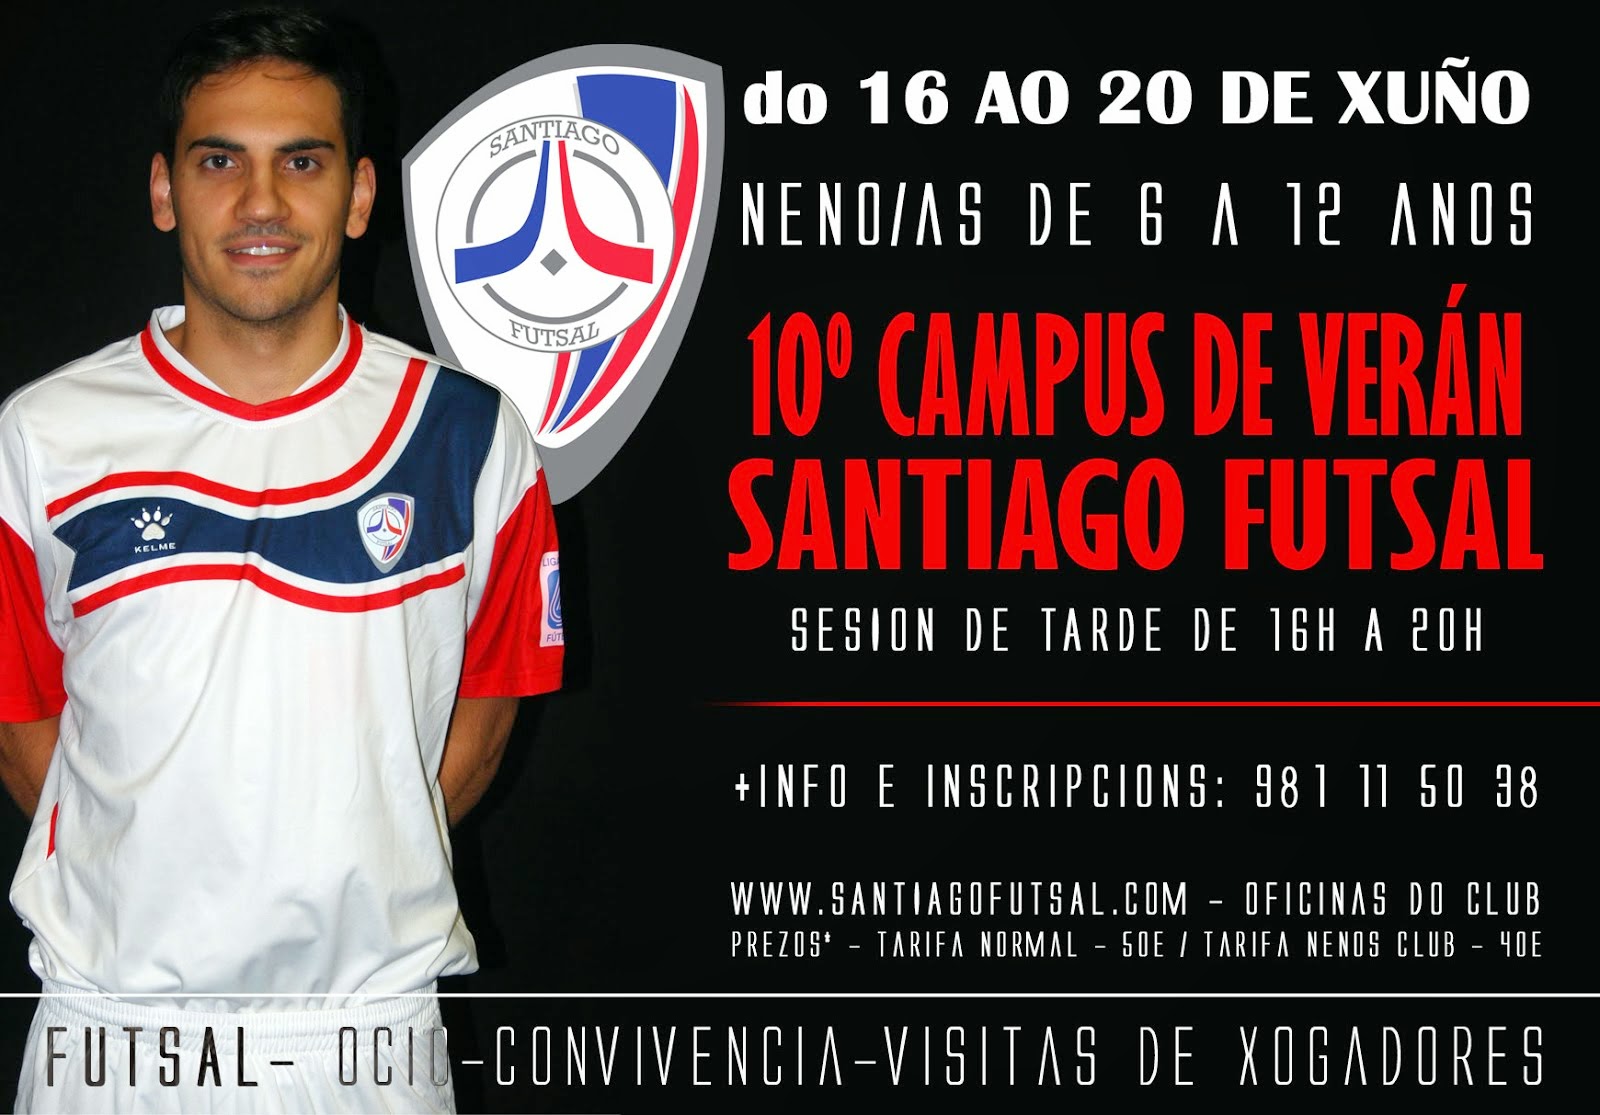 10º Campus de verano Santiago Futsal